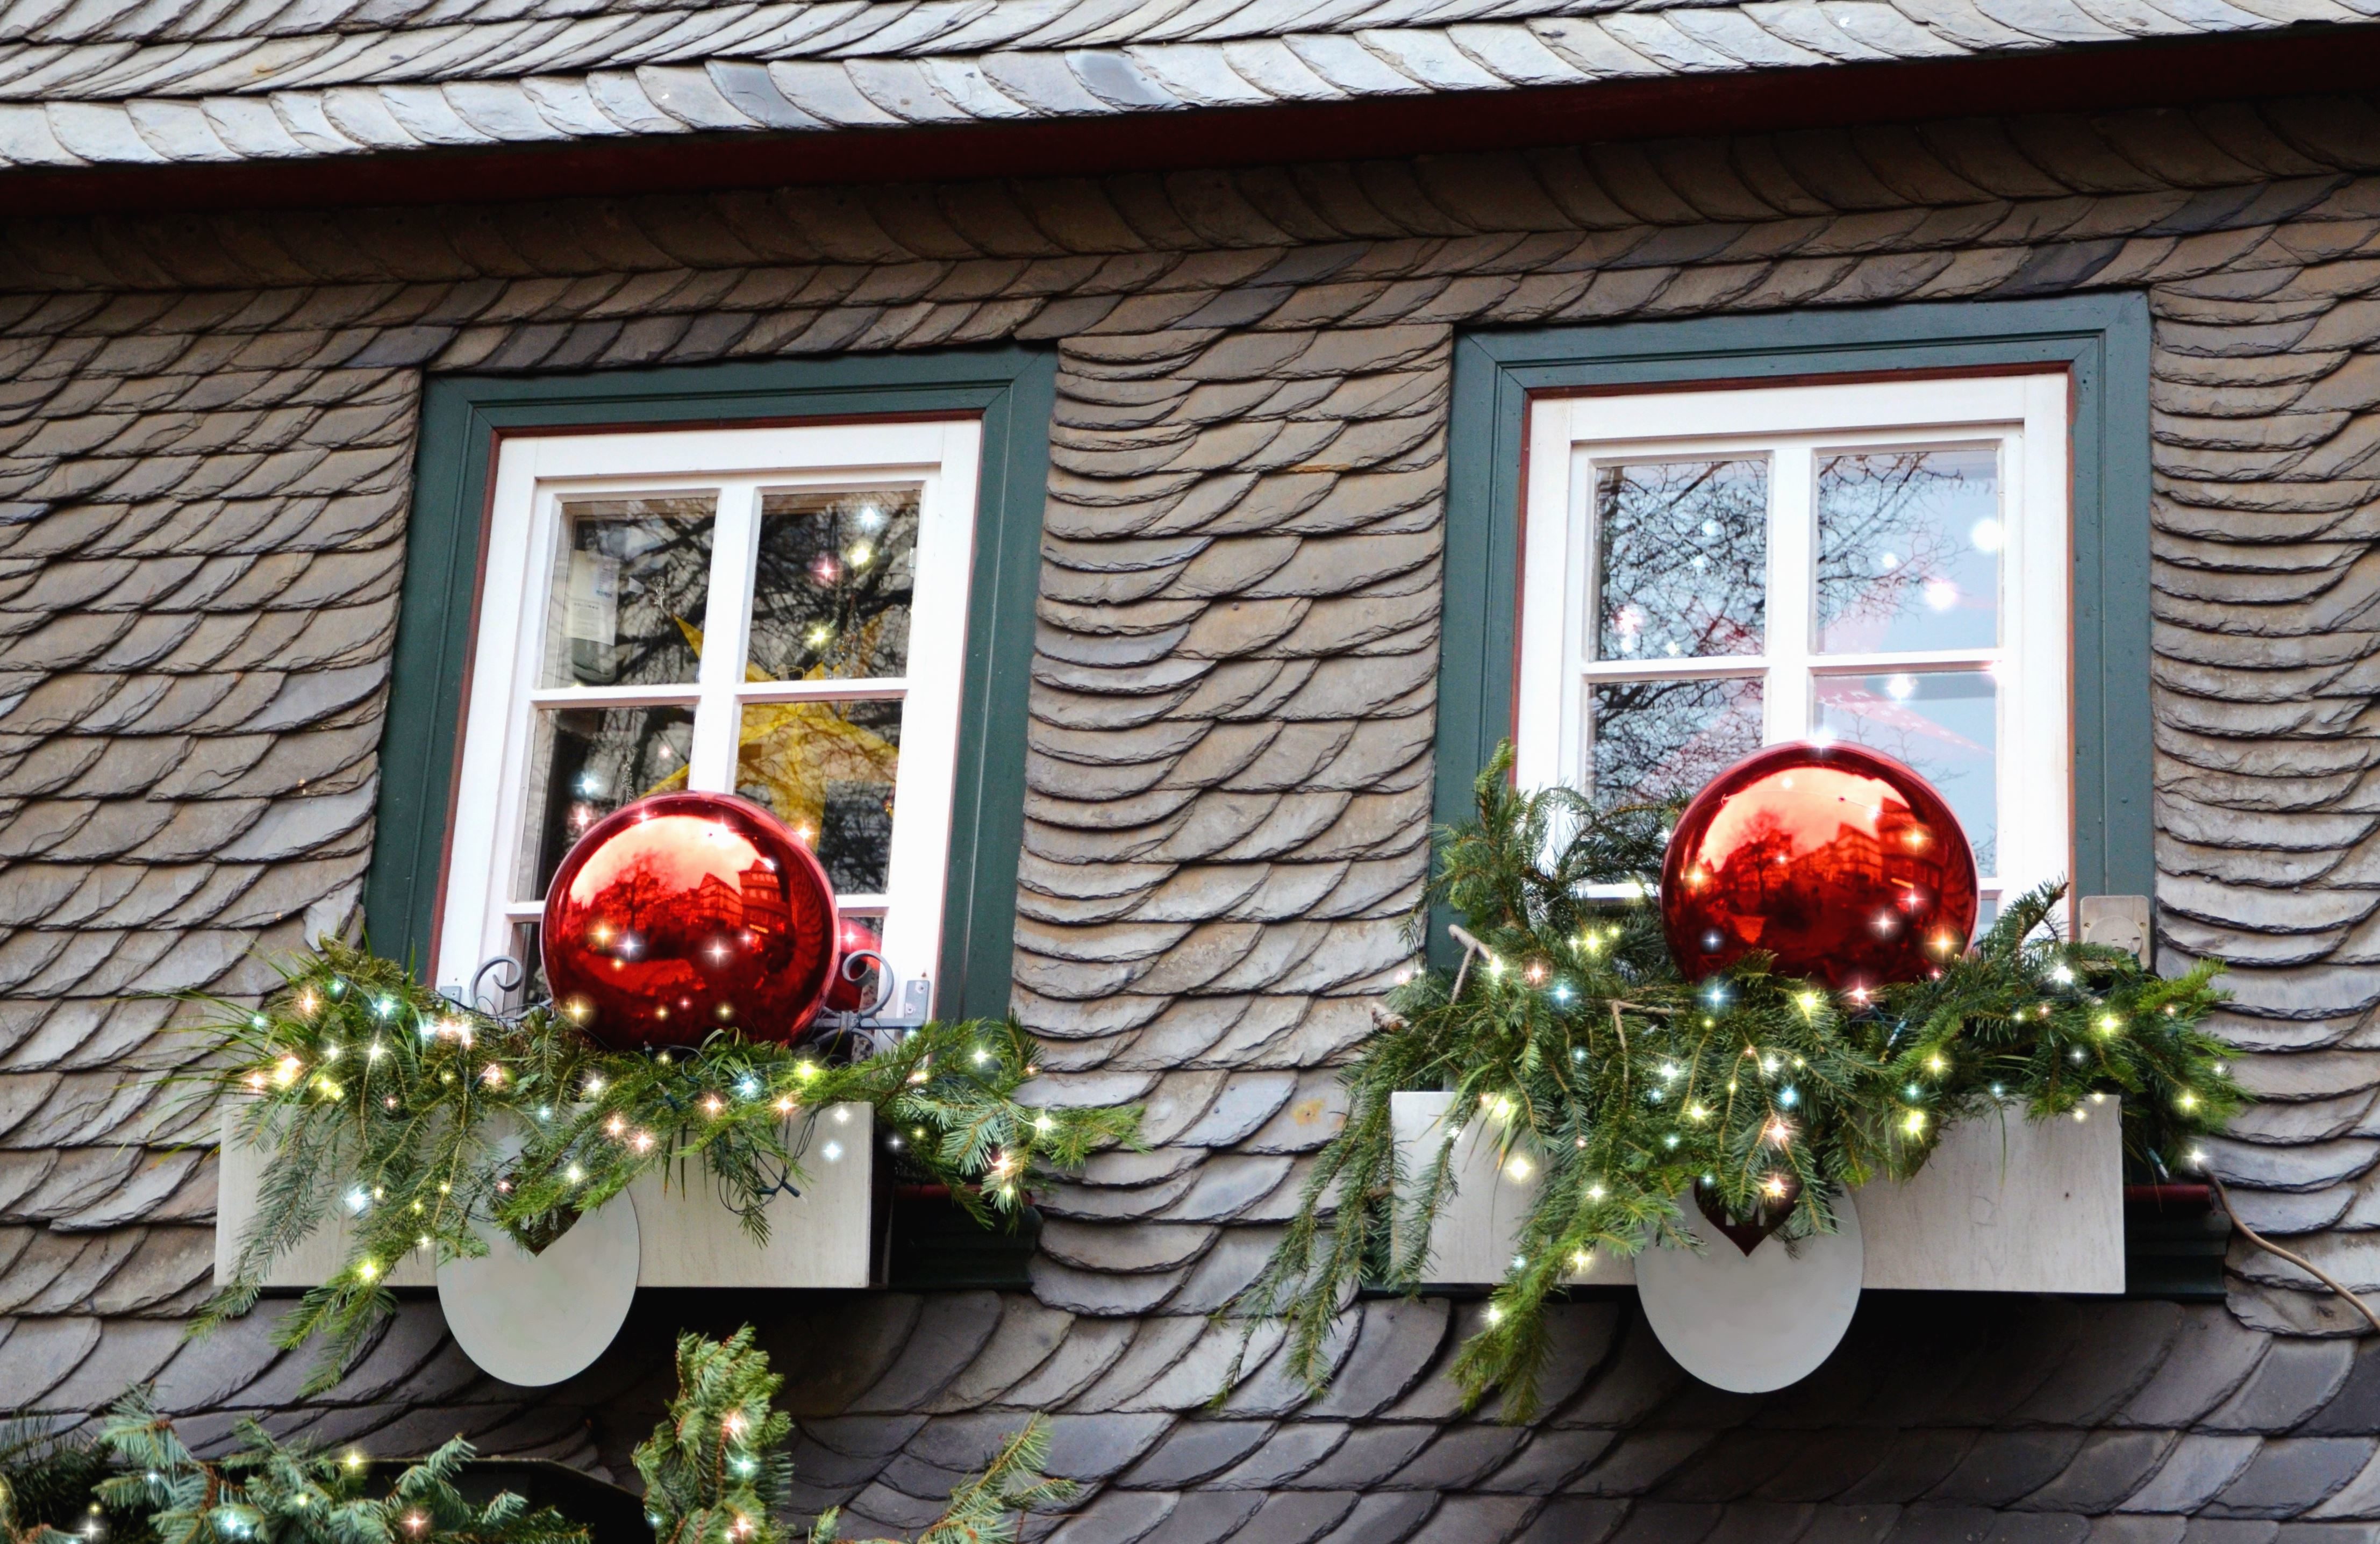 Kostenlose Bild: Dekoration, fenster, dach, haus, weihnachten